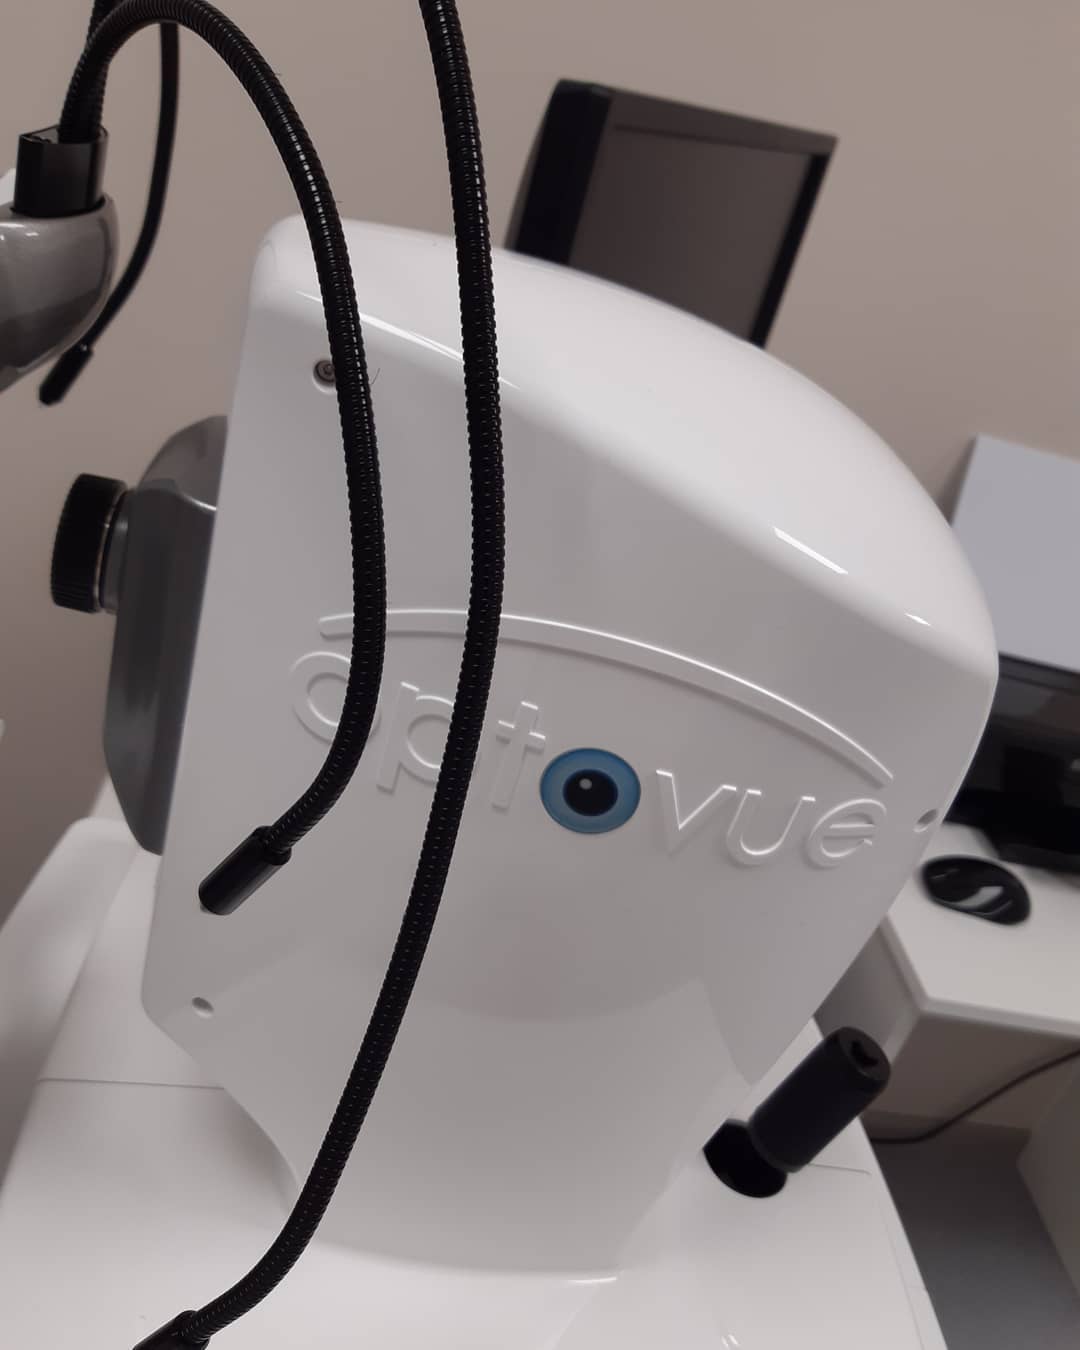 В нашей клинике появился оптический когерентный томограф последнего поколения компании Optovue (США) - RTVue-100 XR Avanti. Позволяет получать ОКТ-ангиографию - исследования сосудов сетчатки и сосудистой оболочки без использования красителей. Данный прибор отличается от предыдущего поколения наличием специальных следящих систем и прогрессивного программного обеспечения, что даёт максимально качественные сканы сетчатки, зрительного нерва, роговицы, структур угла передней камеры, даже в случаях с неполной прозрачностью оптических сред глаза (при большинстве катаракт, помутнениях стекловидного тела и роговицы).#крылов#жабрансаад#окулюсартсвк#микрохирургияглаз#новоезрение#optovue#окт#томограф#зрительныйнерв#сетчатка#ангиография#дистрофия#технологии#пациенты#офтальмохирург#окулист26#ставрополь#фэм#иол#фрк#ласик#афлиберцепт#катаракта#роговица#сканы#